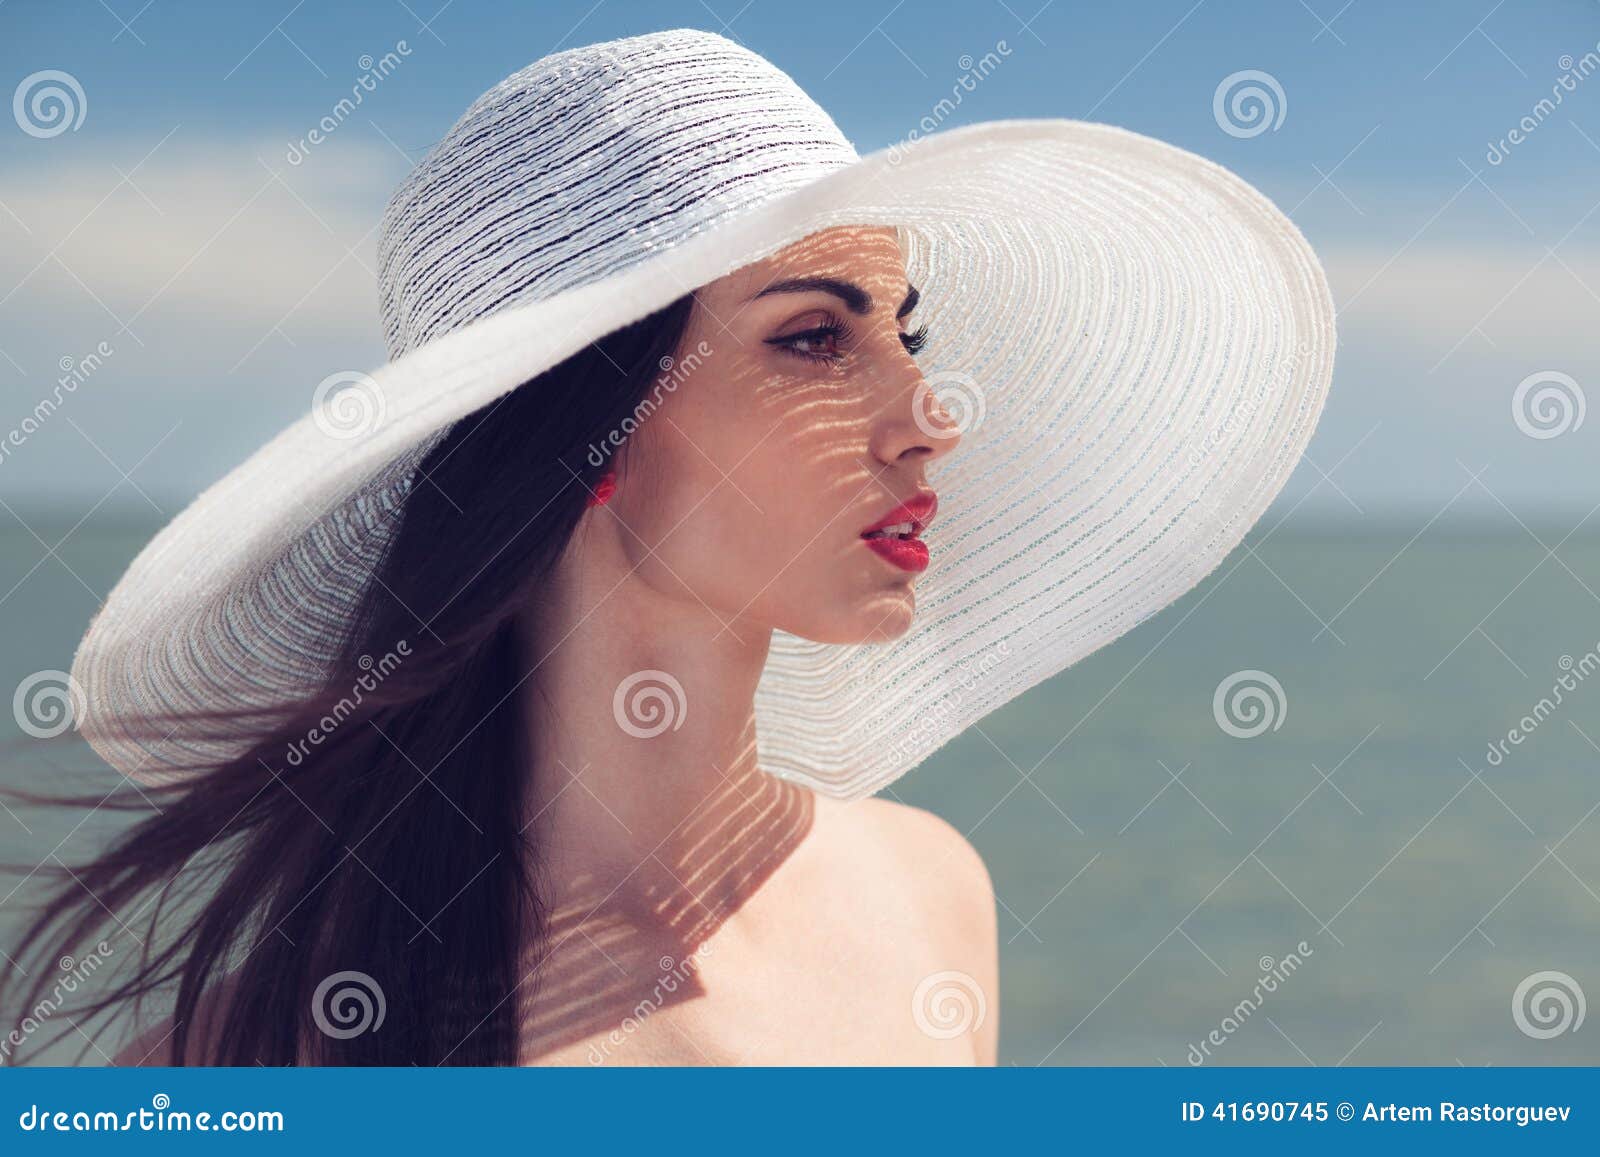 mechanisme Voorman Opvoeding Vrouw in grote witte hoed stock afbeelding. Image of mooi - 41690745